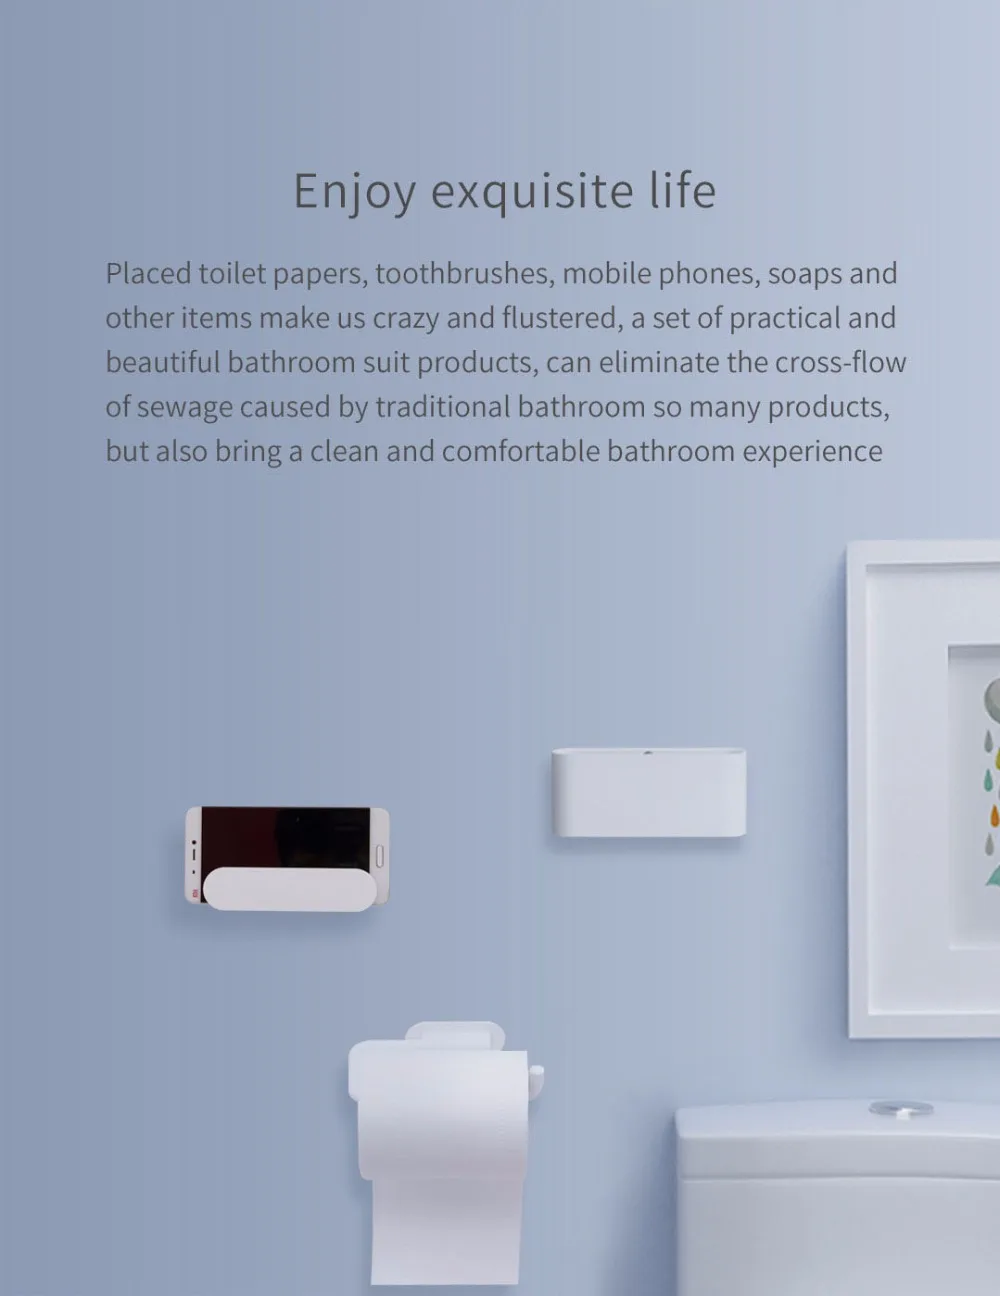 Xiaomi HL Ванная комната 5 в 1 Набор гаджетов для мобильного телефона держатели, телефон Туалет держатель рулона инструменты Мыло зуб крюк Коробка для хранения